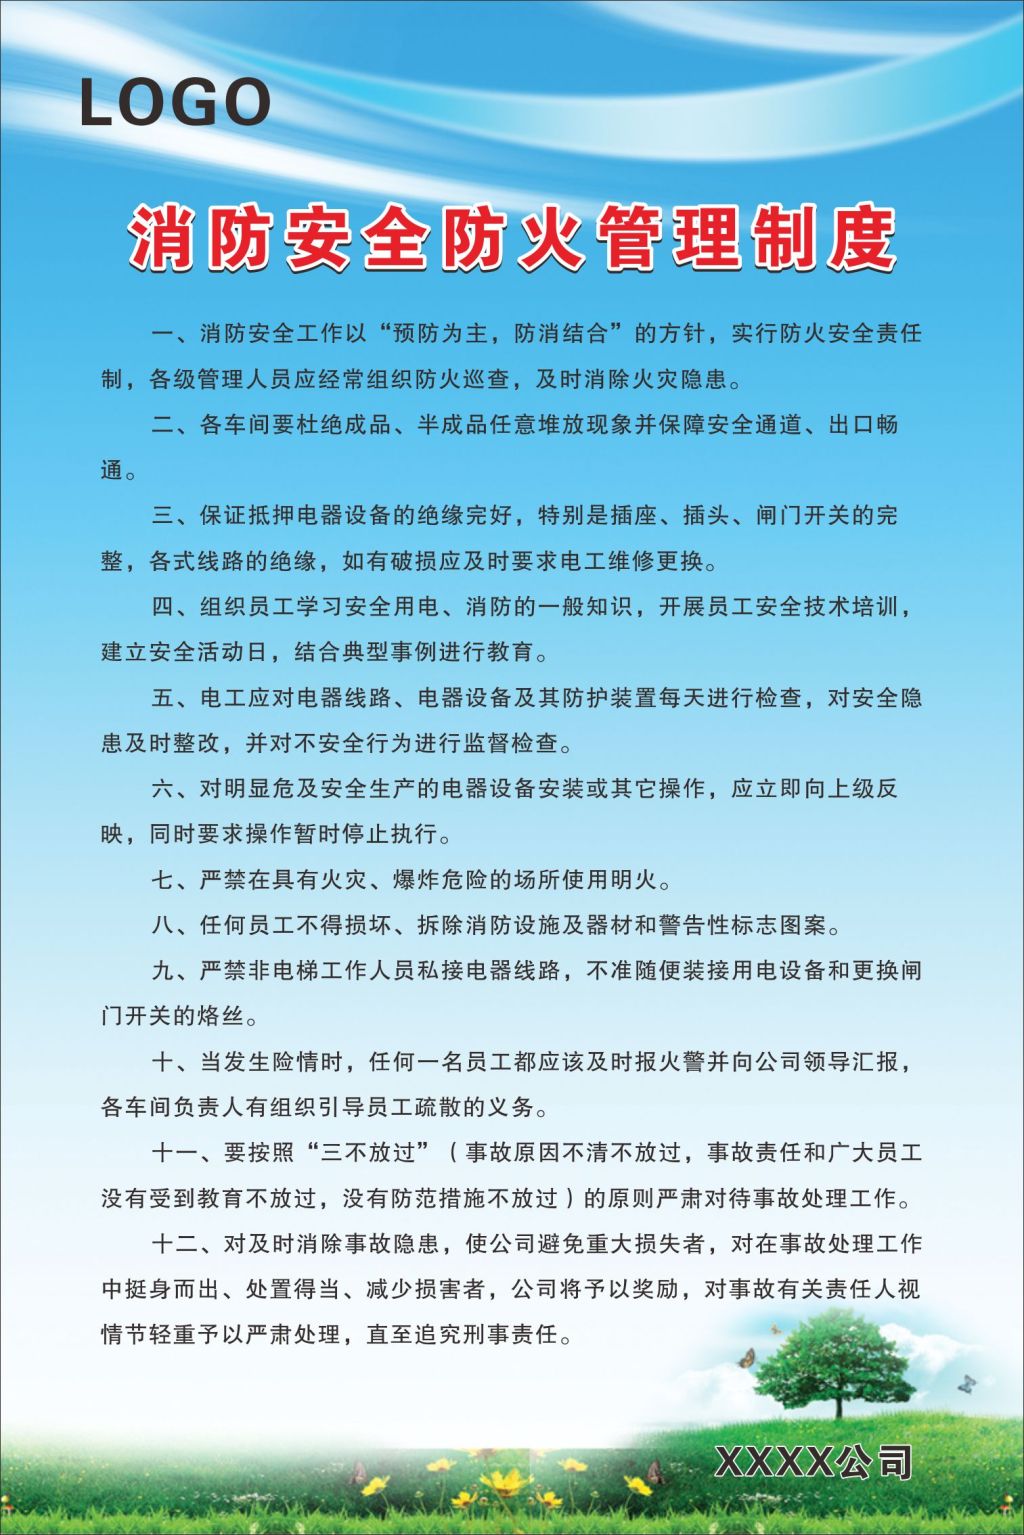 北京市防火安全工作管理規定